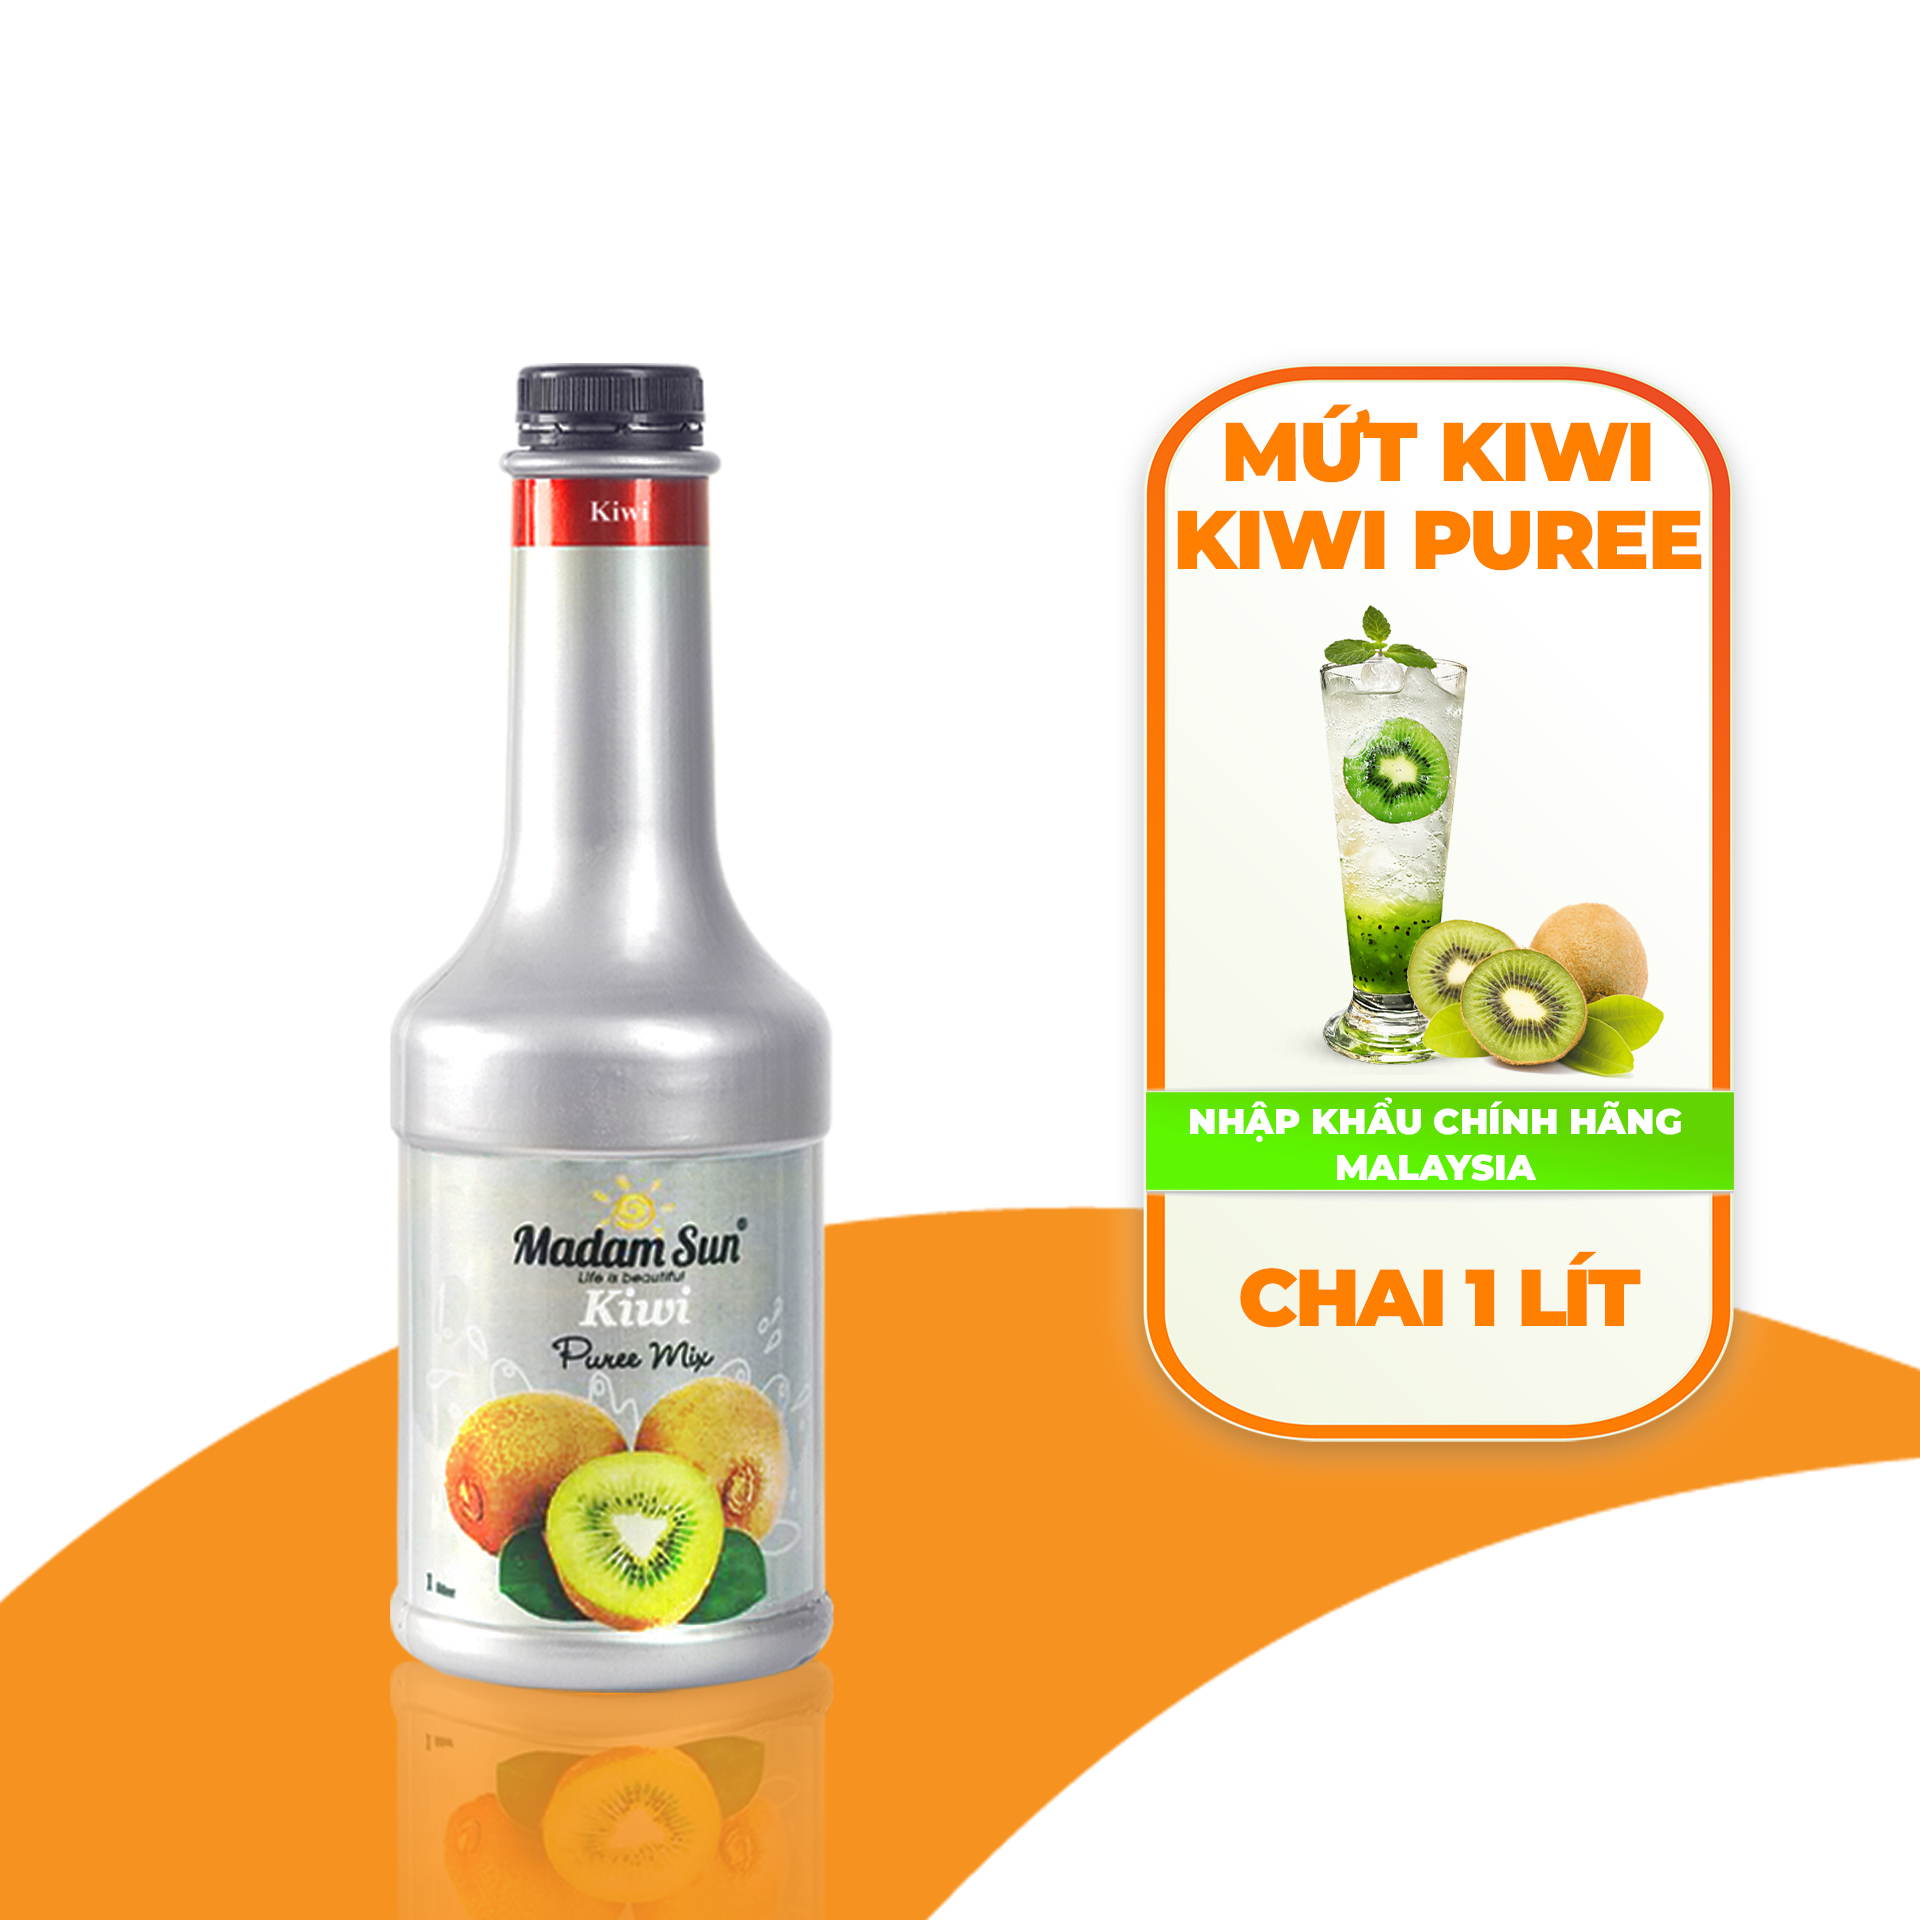 Mứt trái cây pha chế Madamsun vị Kiwi (Kiwi Puree Mix) chai 1L - Hàng nhập khẩu chính hãng Malaysia